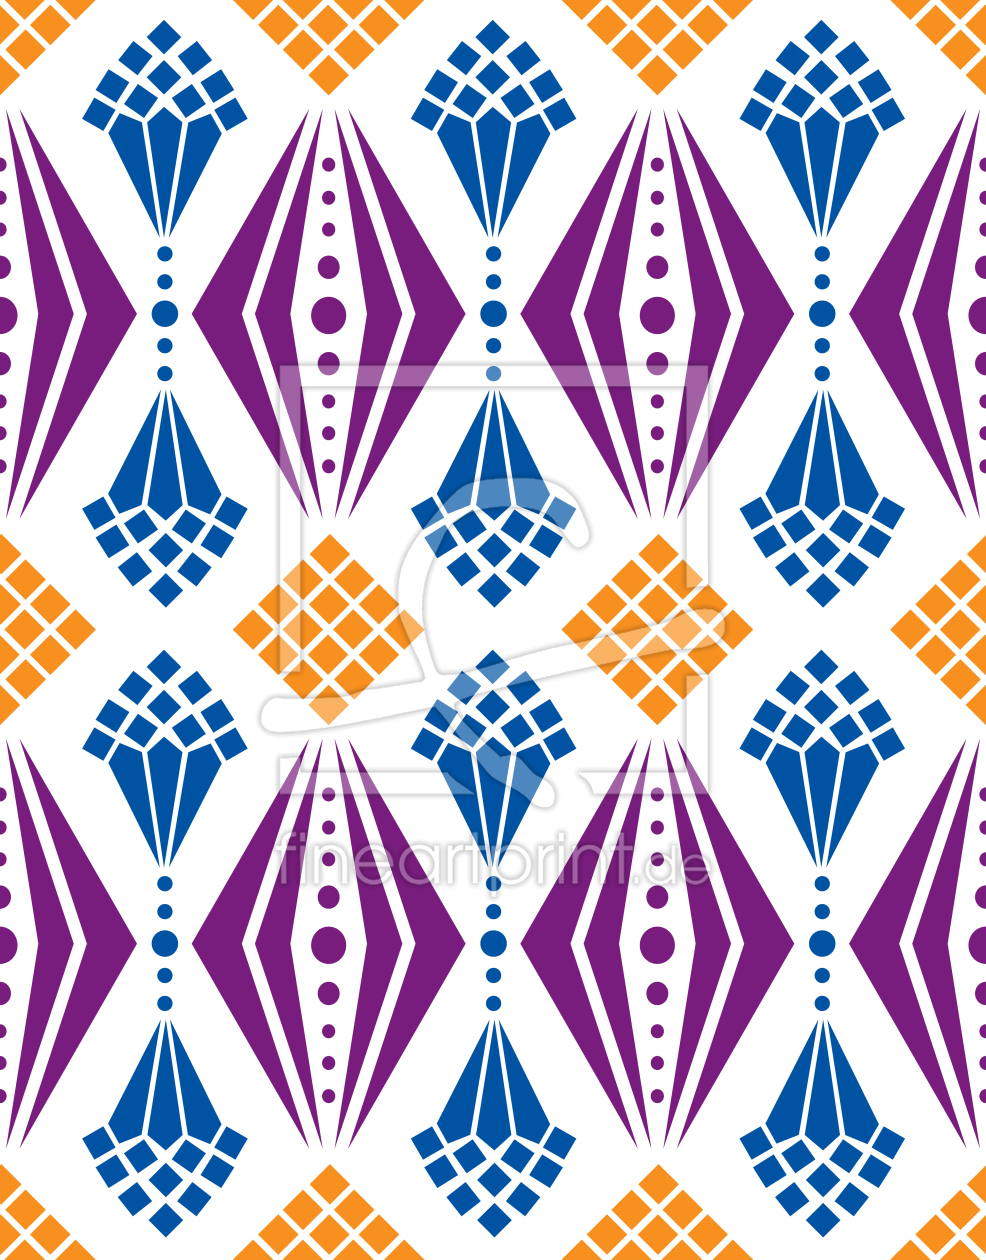 Bild-Nr.: 9025570 Kronleuchter Dekor erstellt von patterndesigns-com